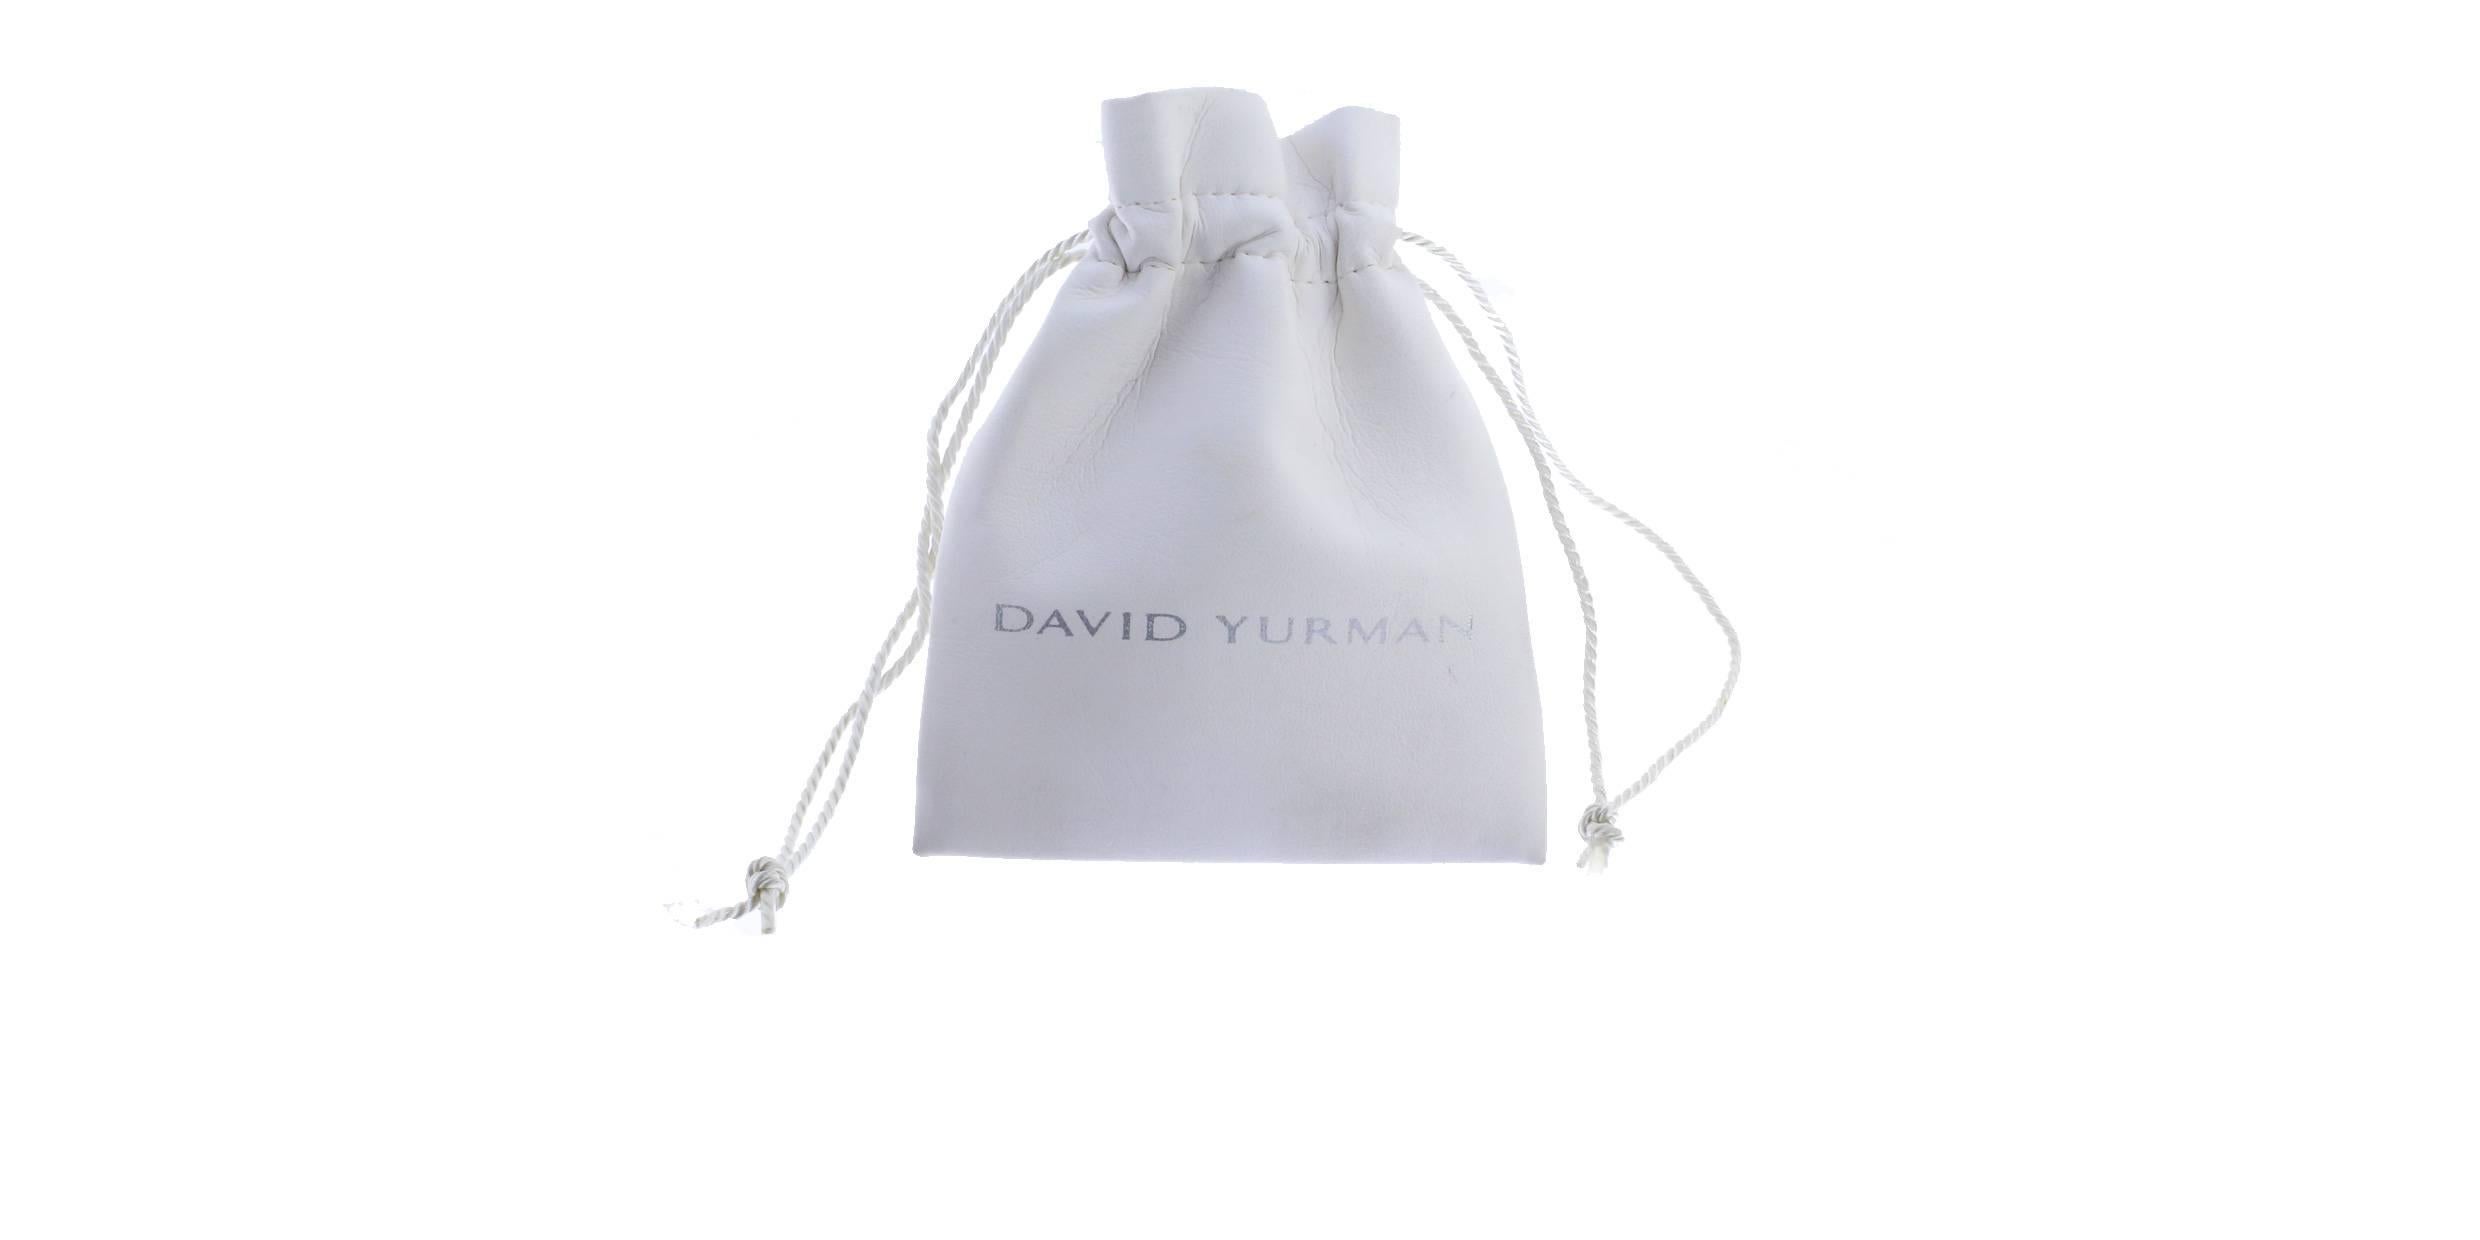 david yurman chain link necklace